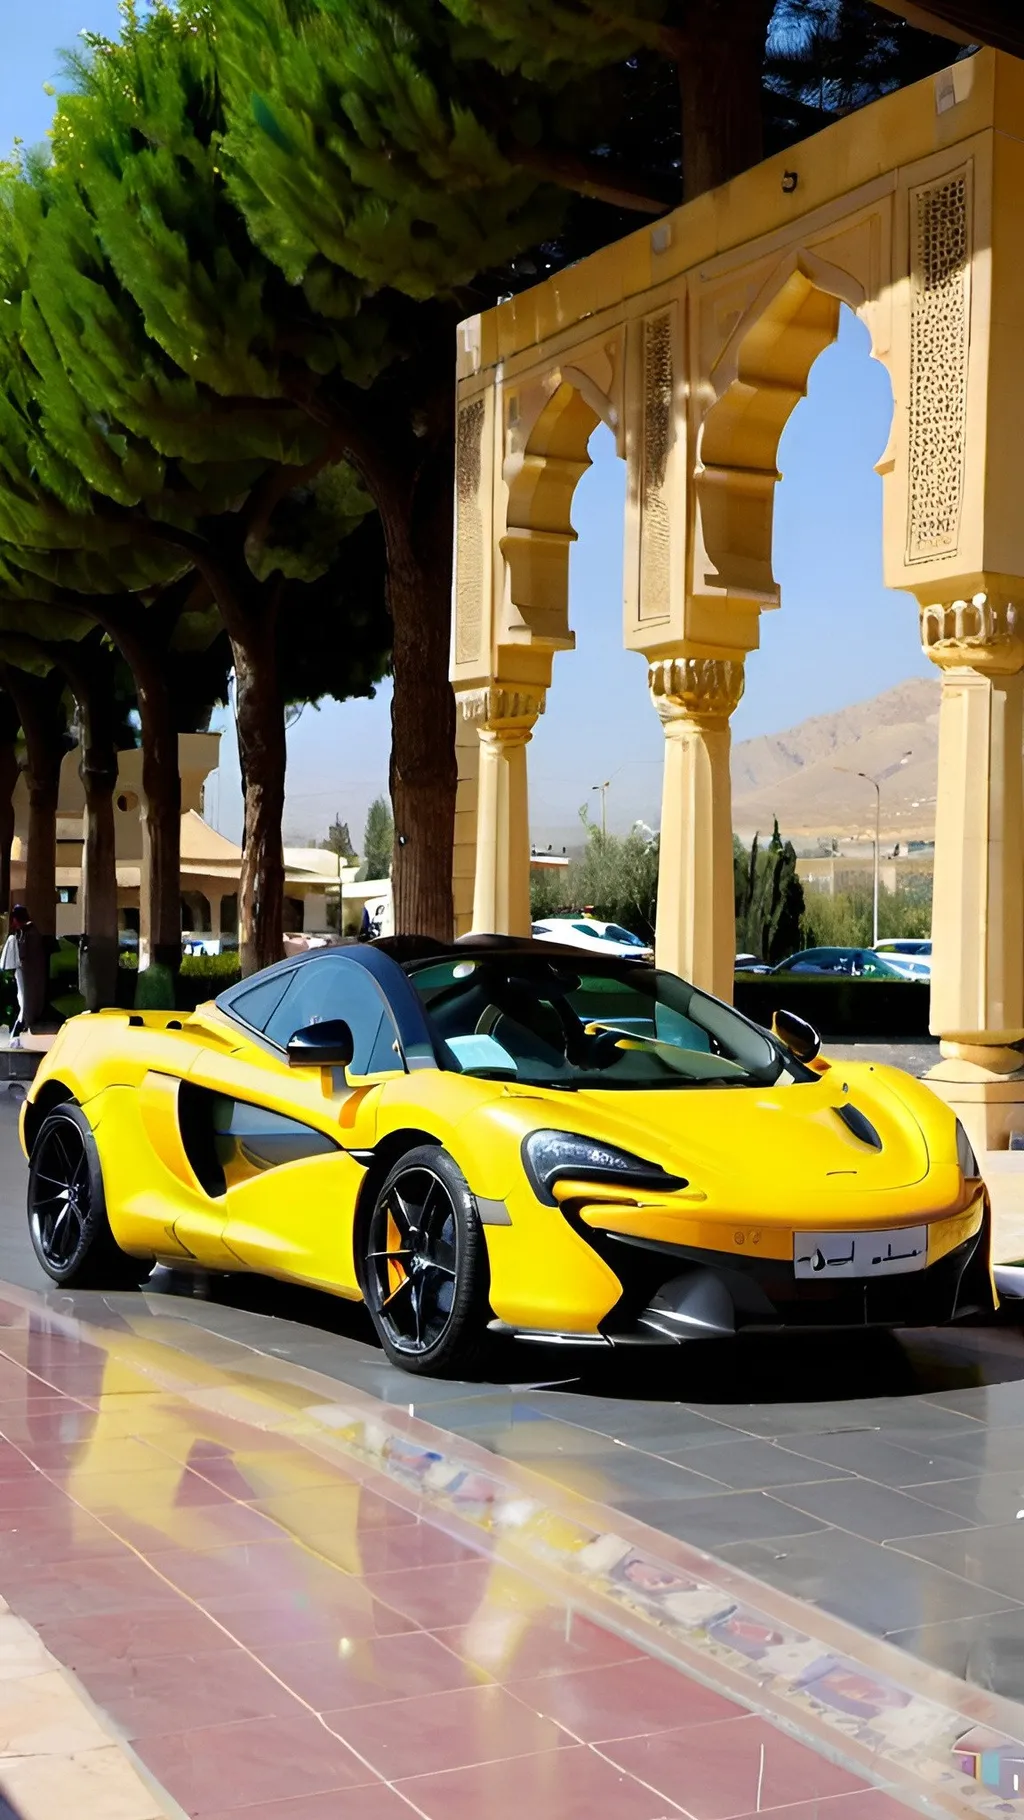 Prompt: A yellow McLaren car in Shiraz 